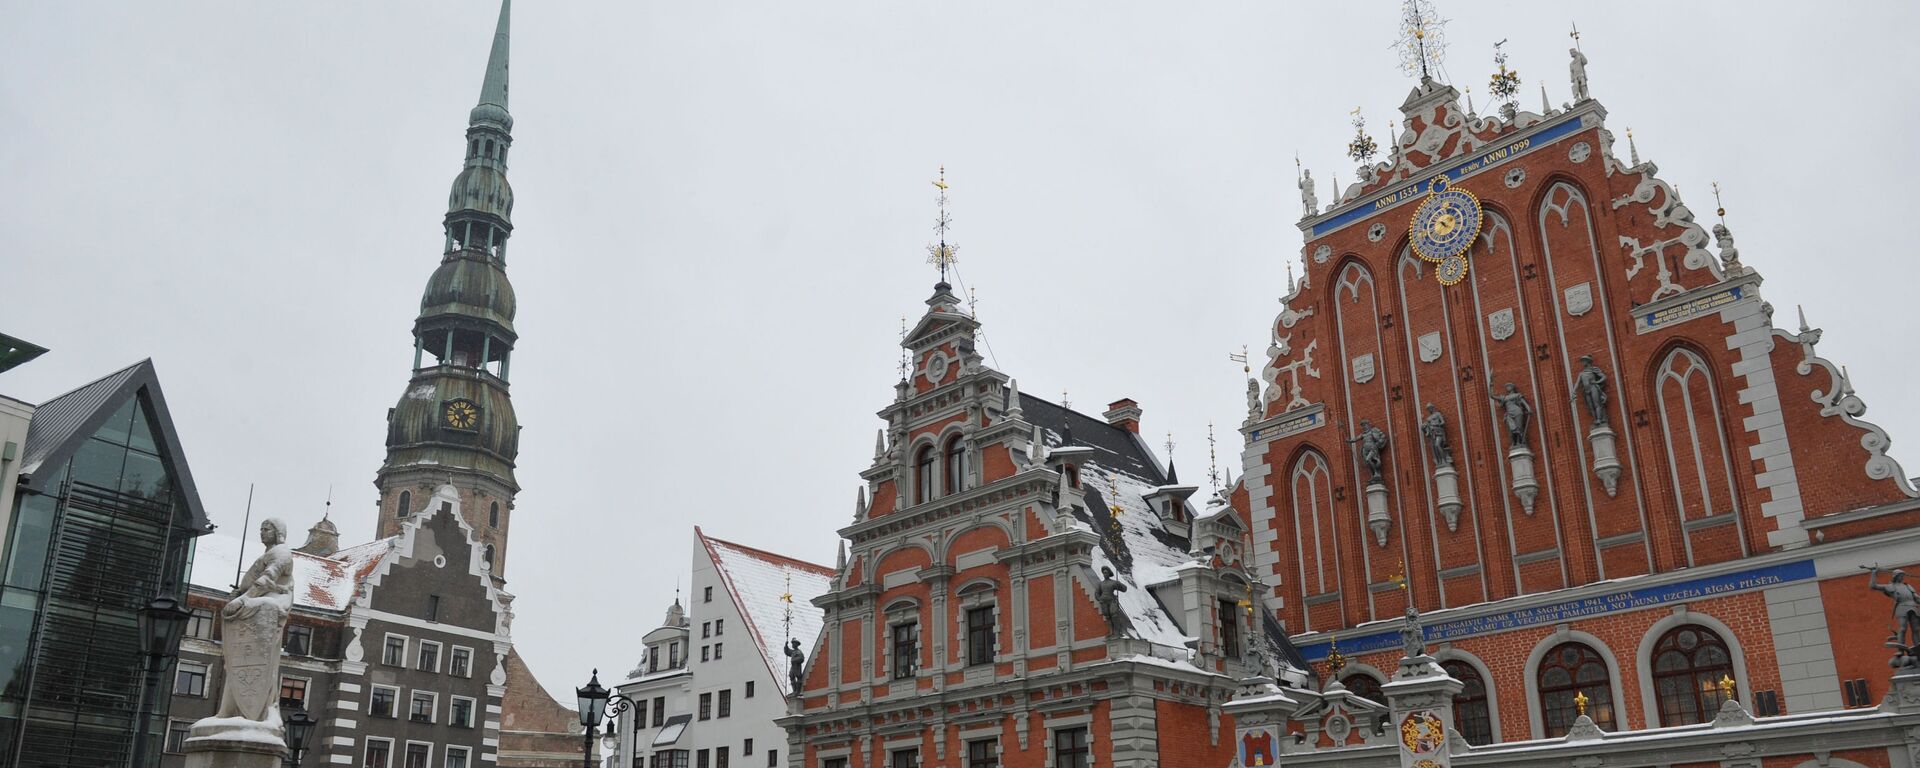 Статуя Роланда и Дом Черноголовых на Ратушной площади в Старой Риге, Латвия - Sputnik Латвия, 1920, 18.01.2022